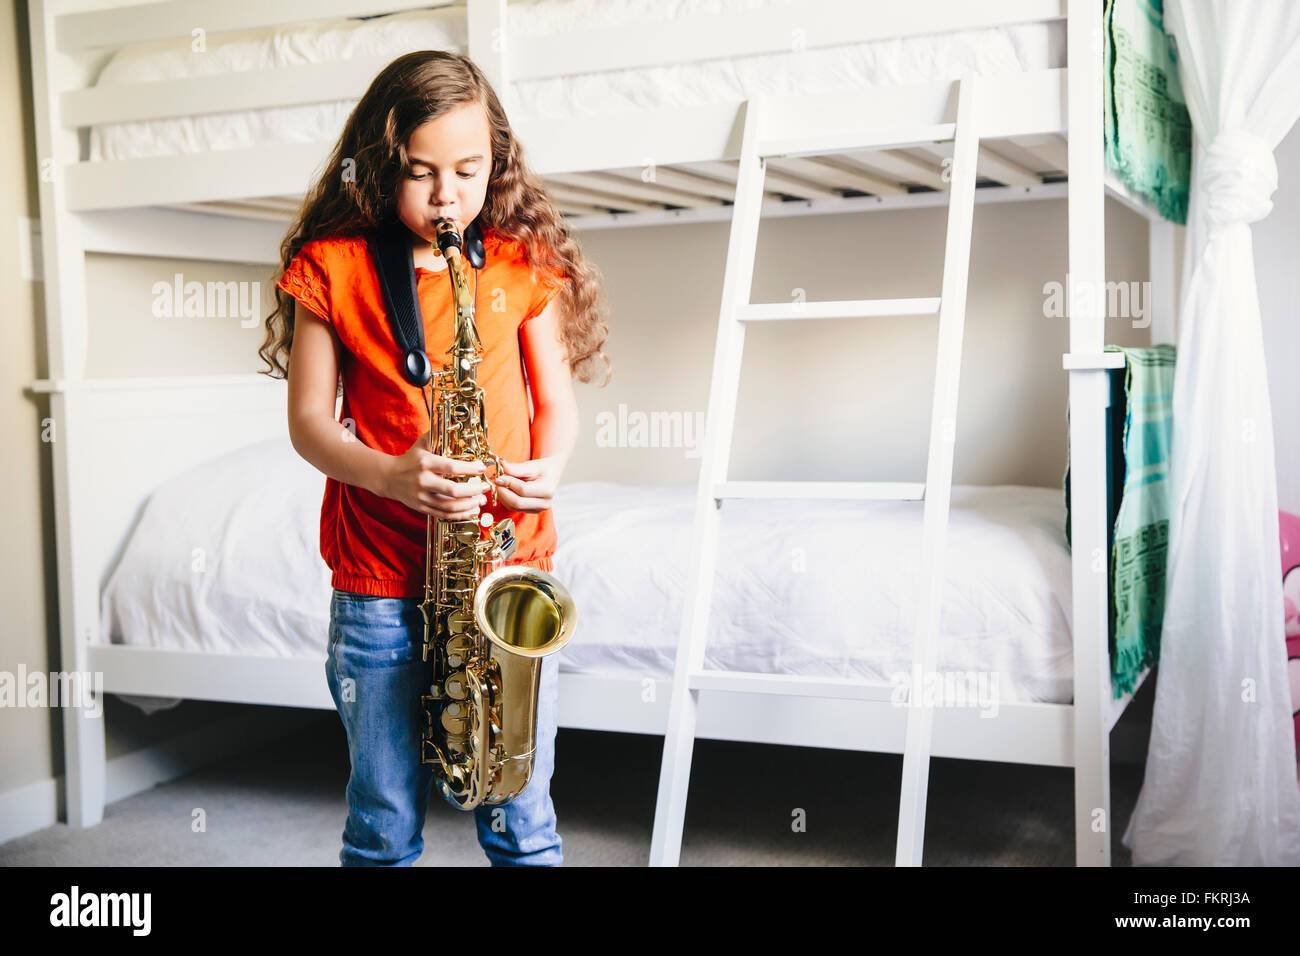 Mixed Race girl à jouer du saxophone dans la chambre Banque D'Images